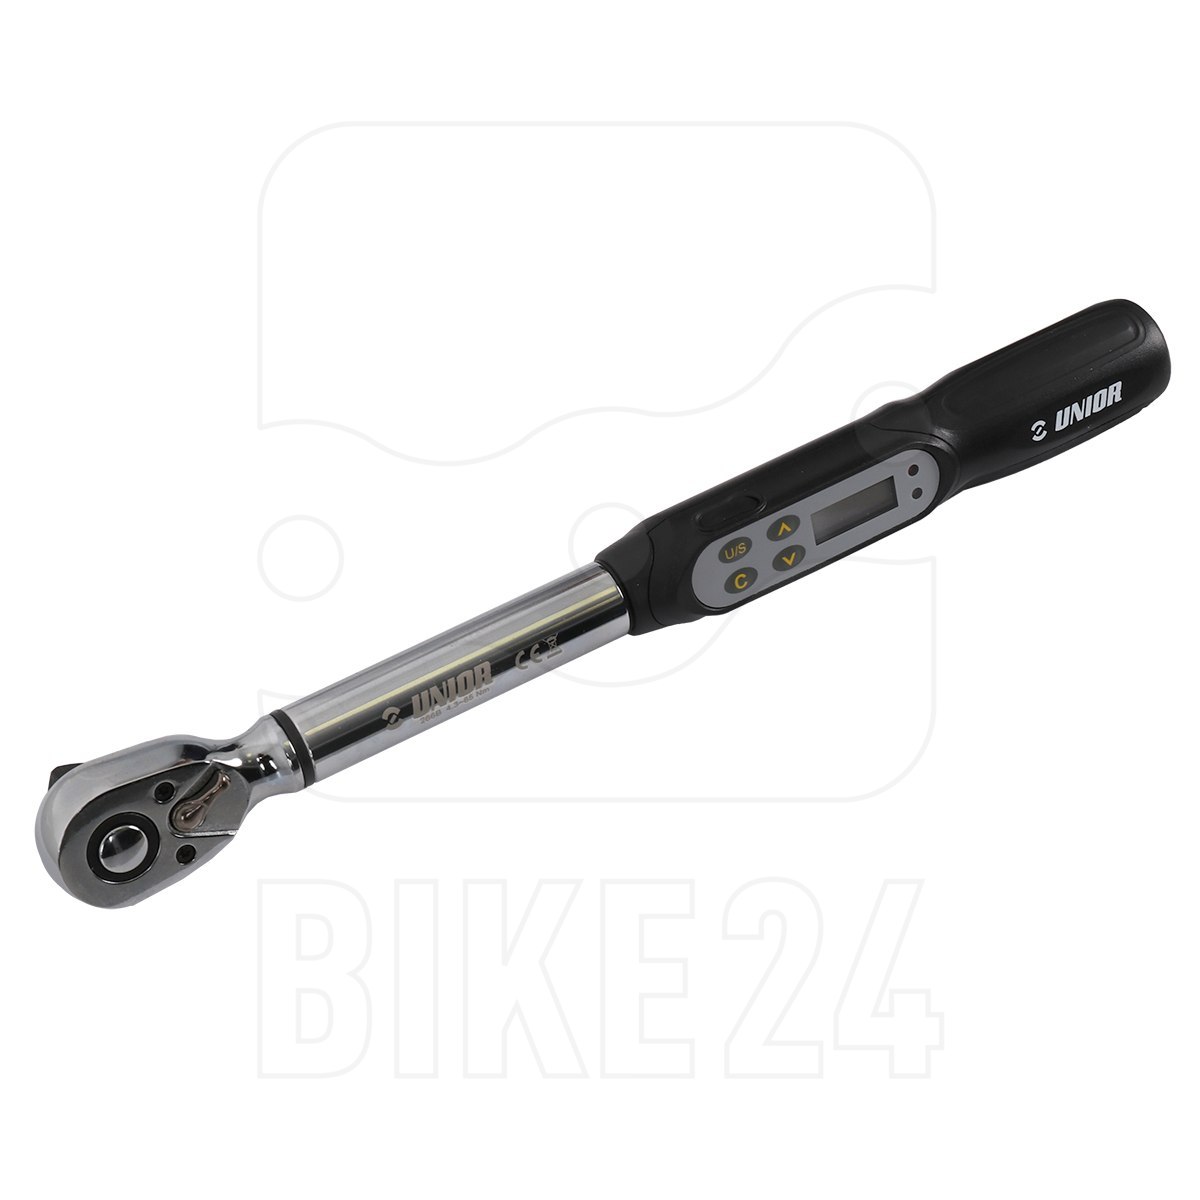 Produktbild von Unior Bike Tools Elektronischer Drehmomentschlüssel - 266B 4,3-85Nm